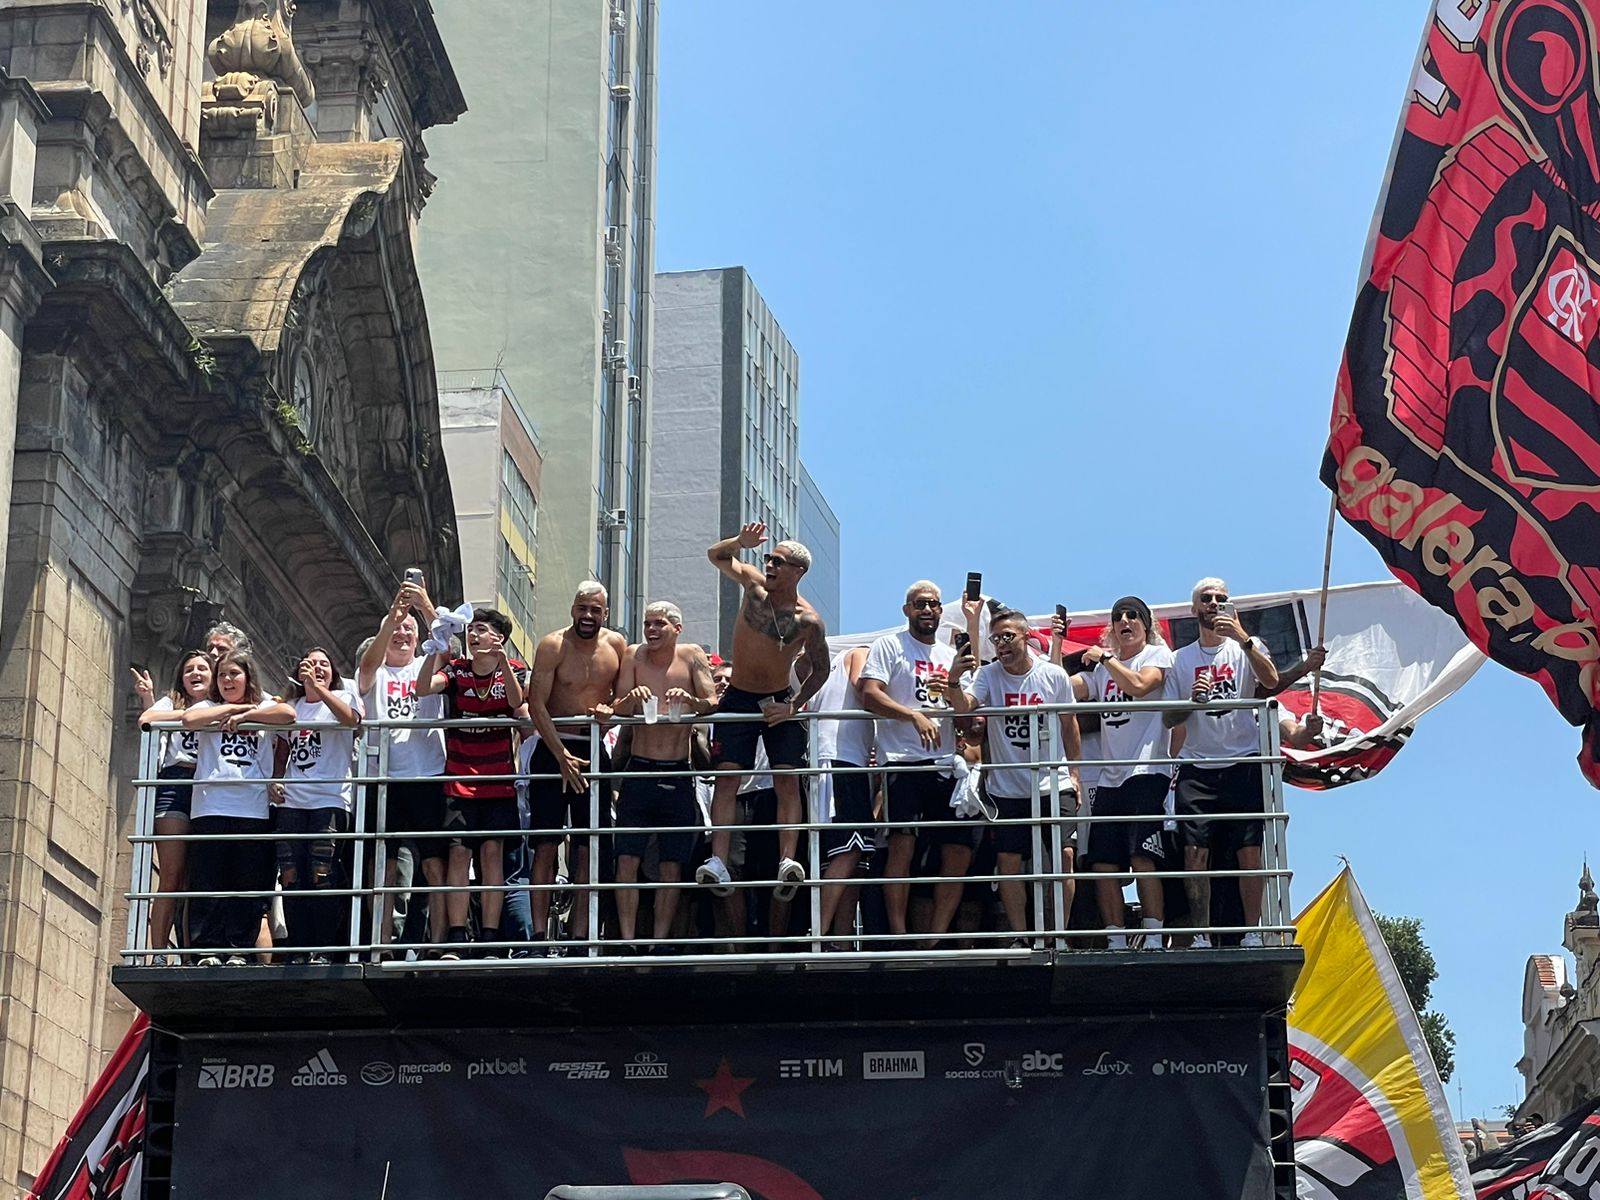 Torcedores rubro-negros agitam o Centro do Rio em festa do Flamengo